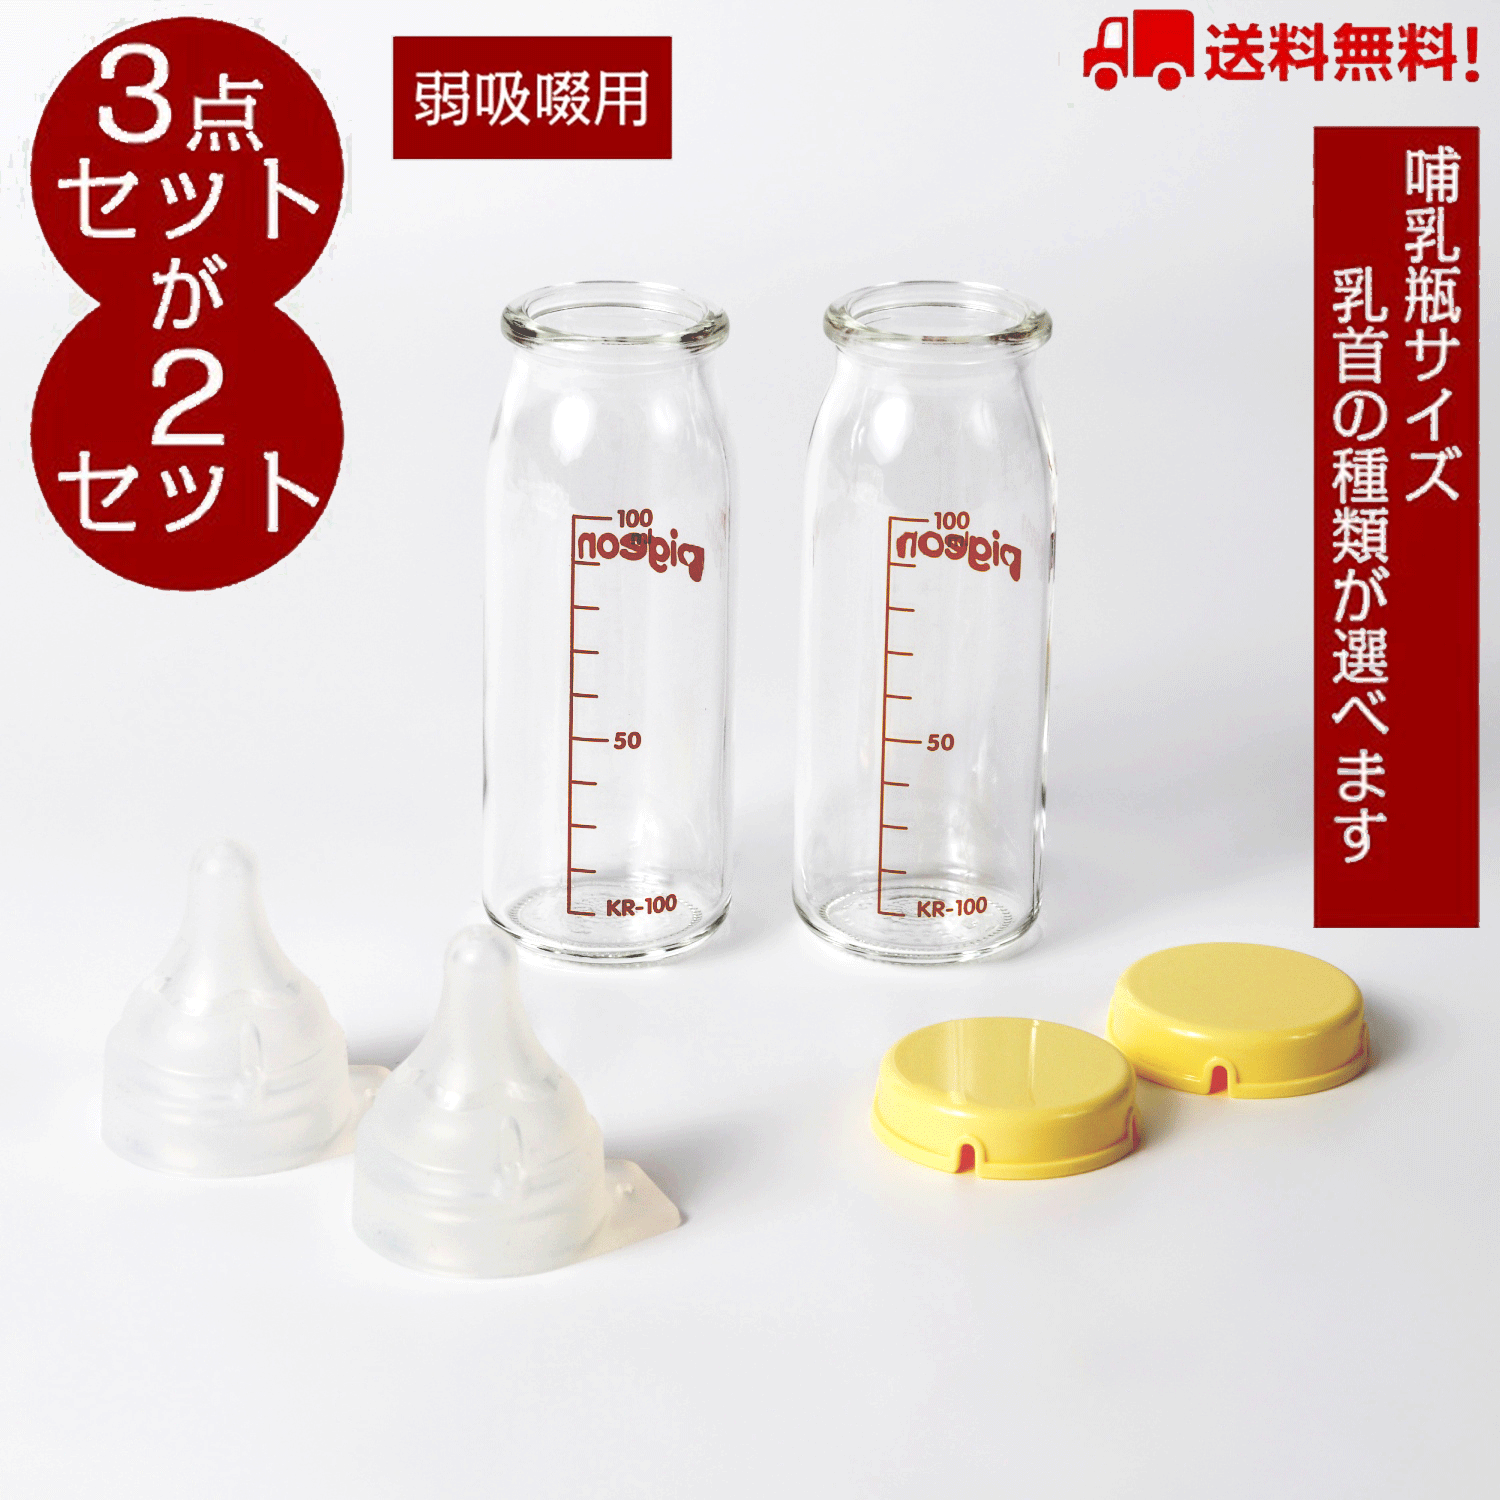 【ほぼ未使用】母乳実感産院用200ml 4本\u0026哺乳瓶消毒ケースセット